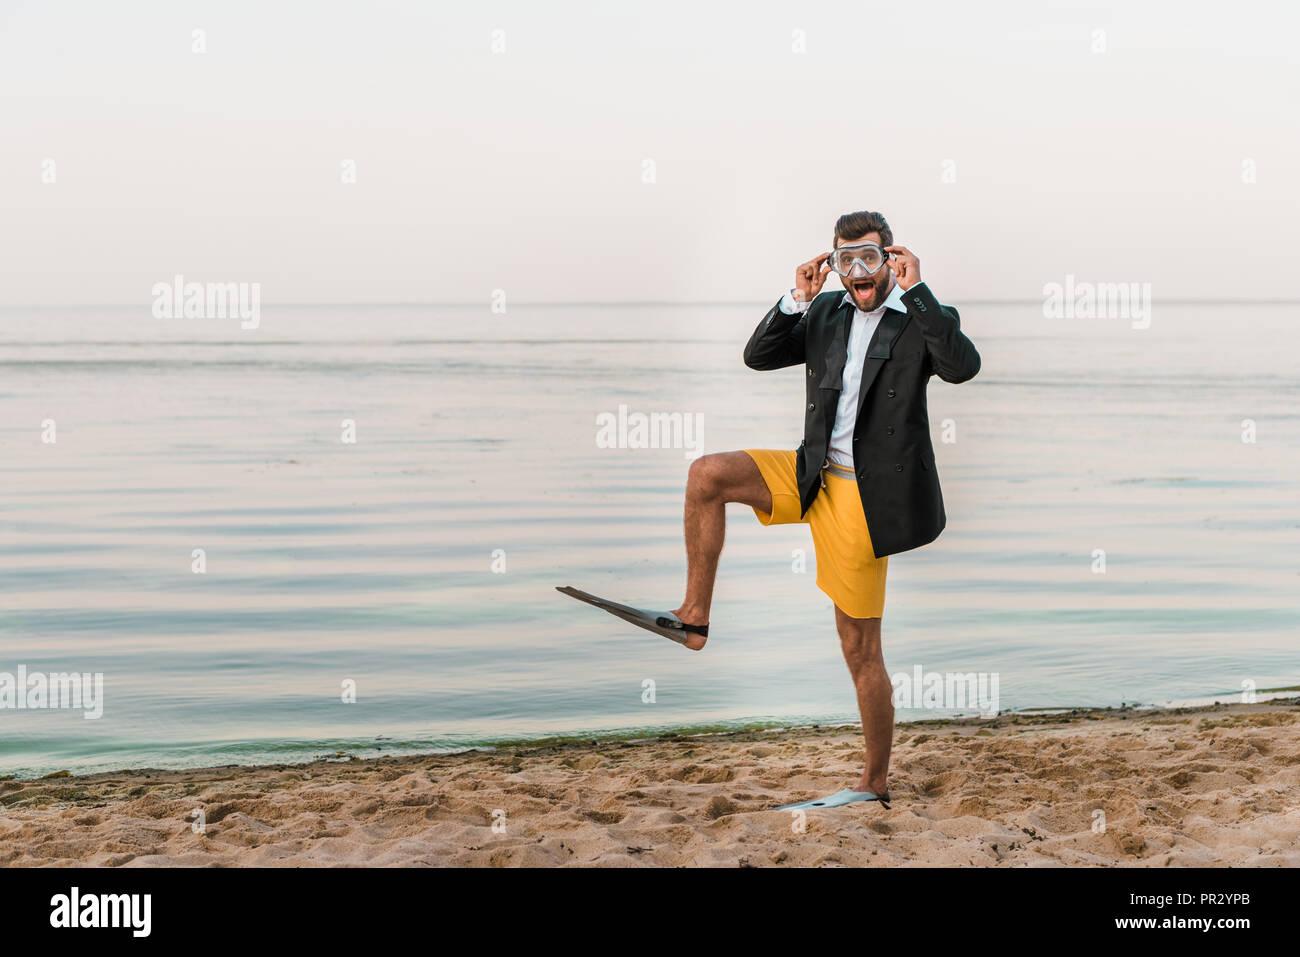 Überrascht Mann in Schwarz Jacke, Hose und Flossen Maske berühren, Schwimmen am Strand in der Nähe von Meer Stockfoto